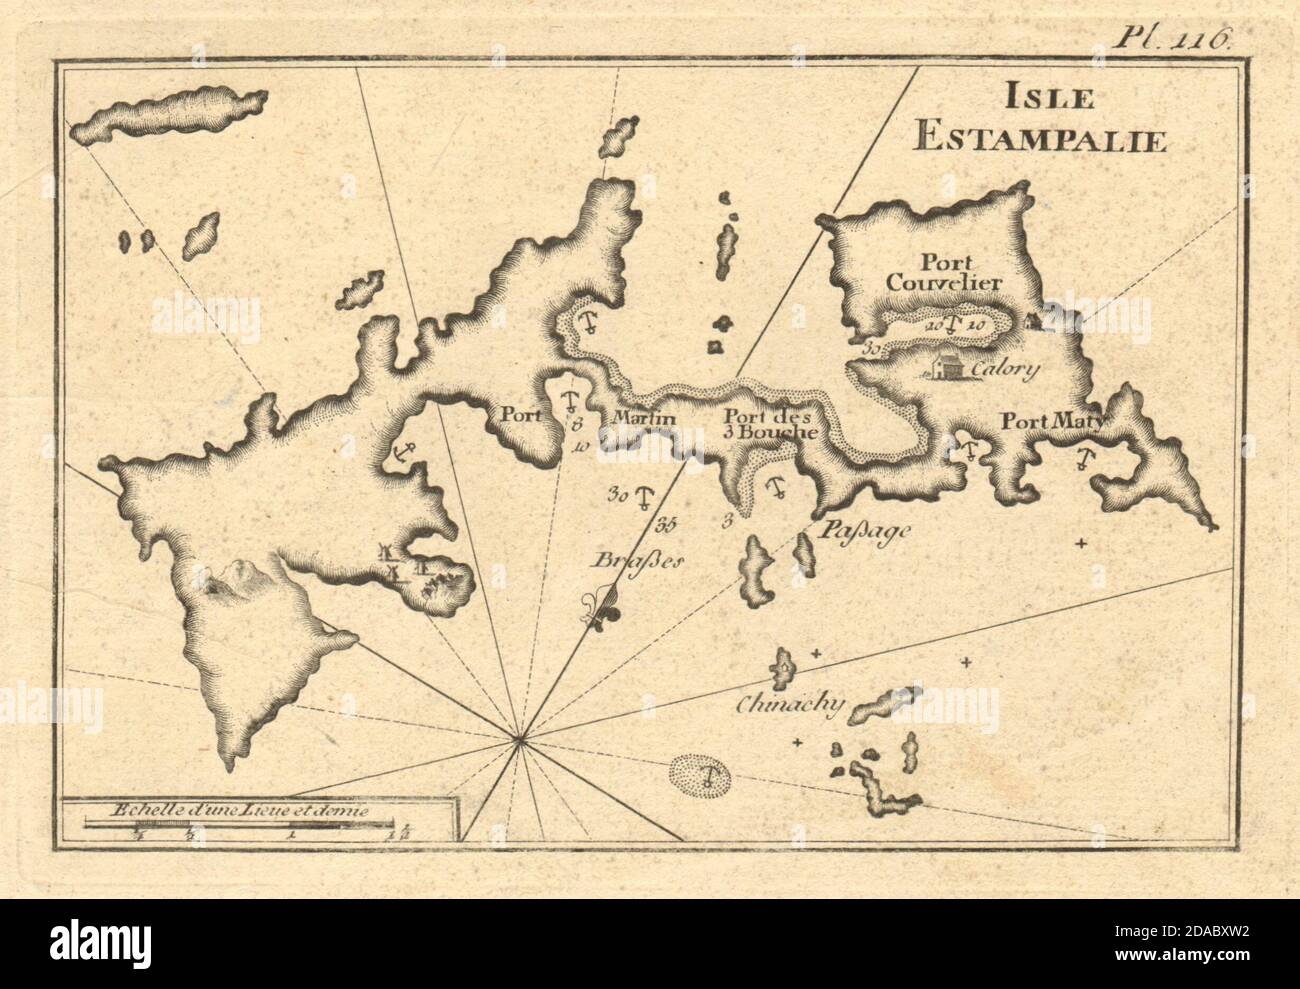 Isla Estampalie. La isla de Astypalaia, Dodecaneso. Grecia. Mapa DE ROUX 1804 Foto de stock